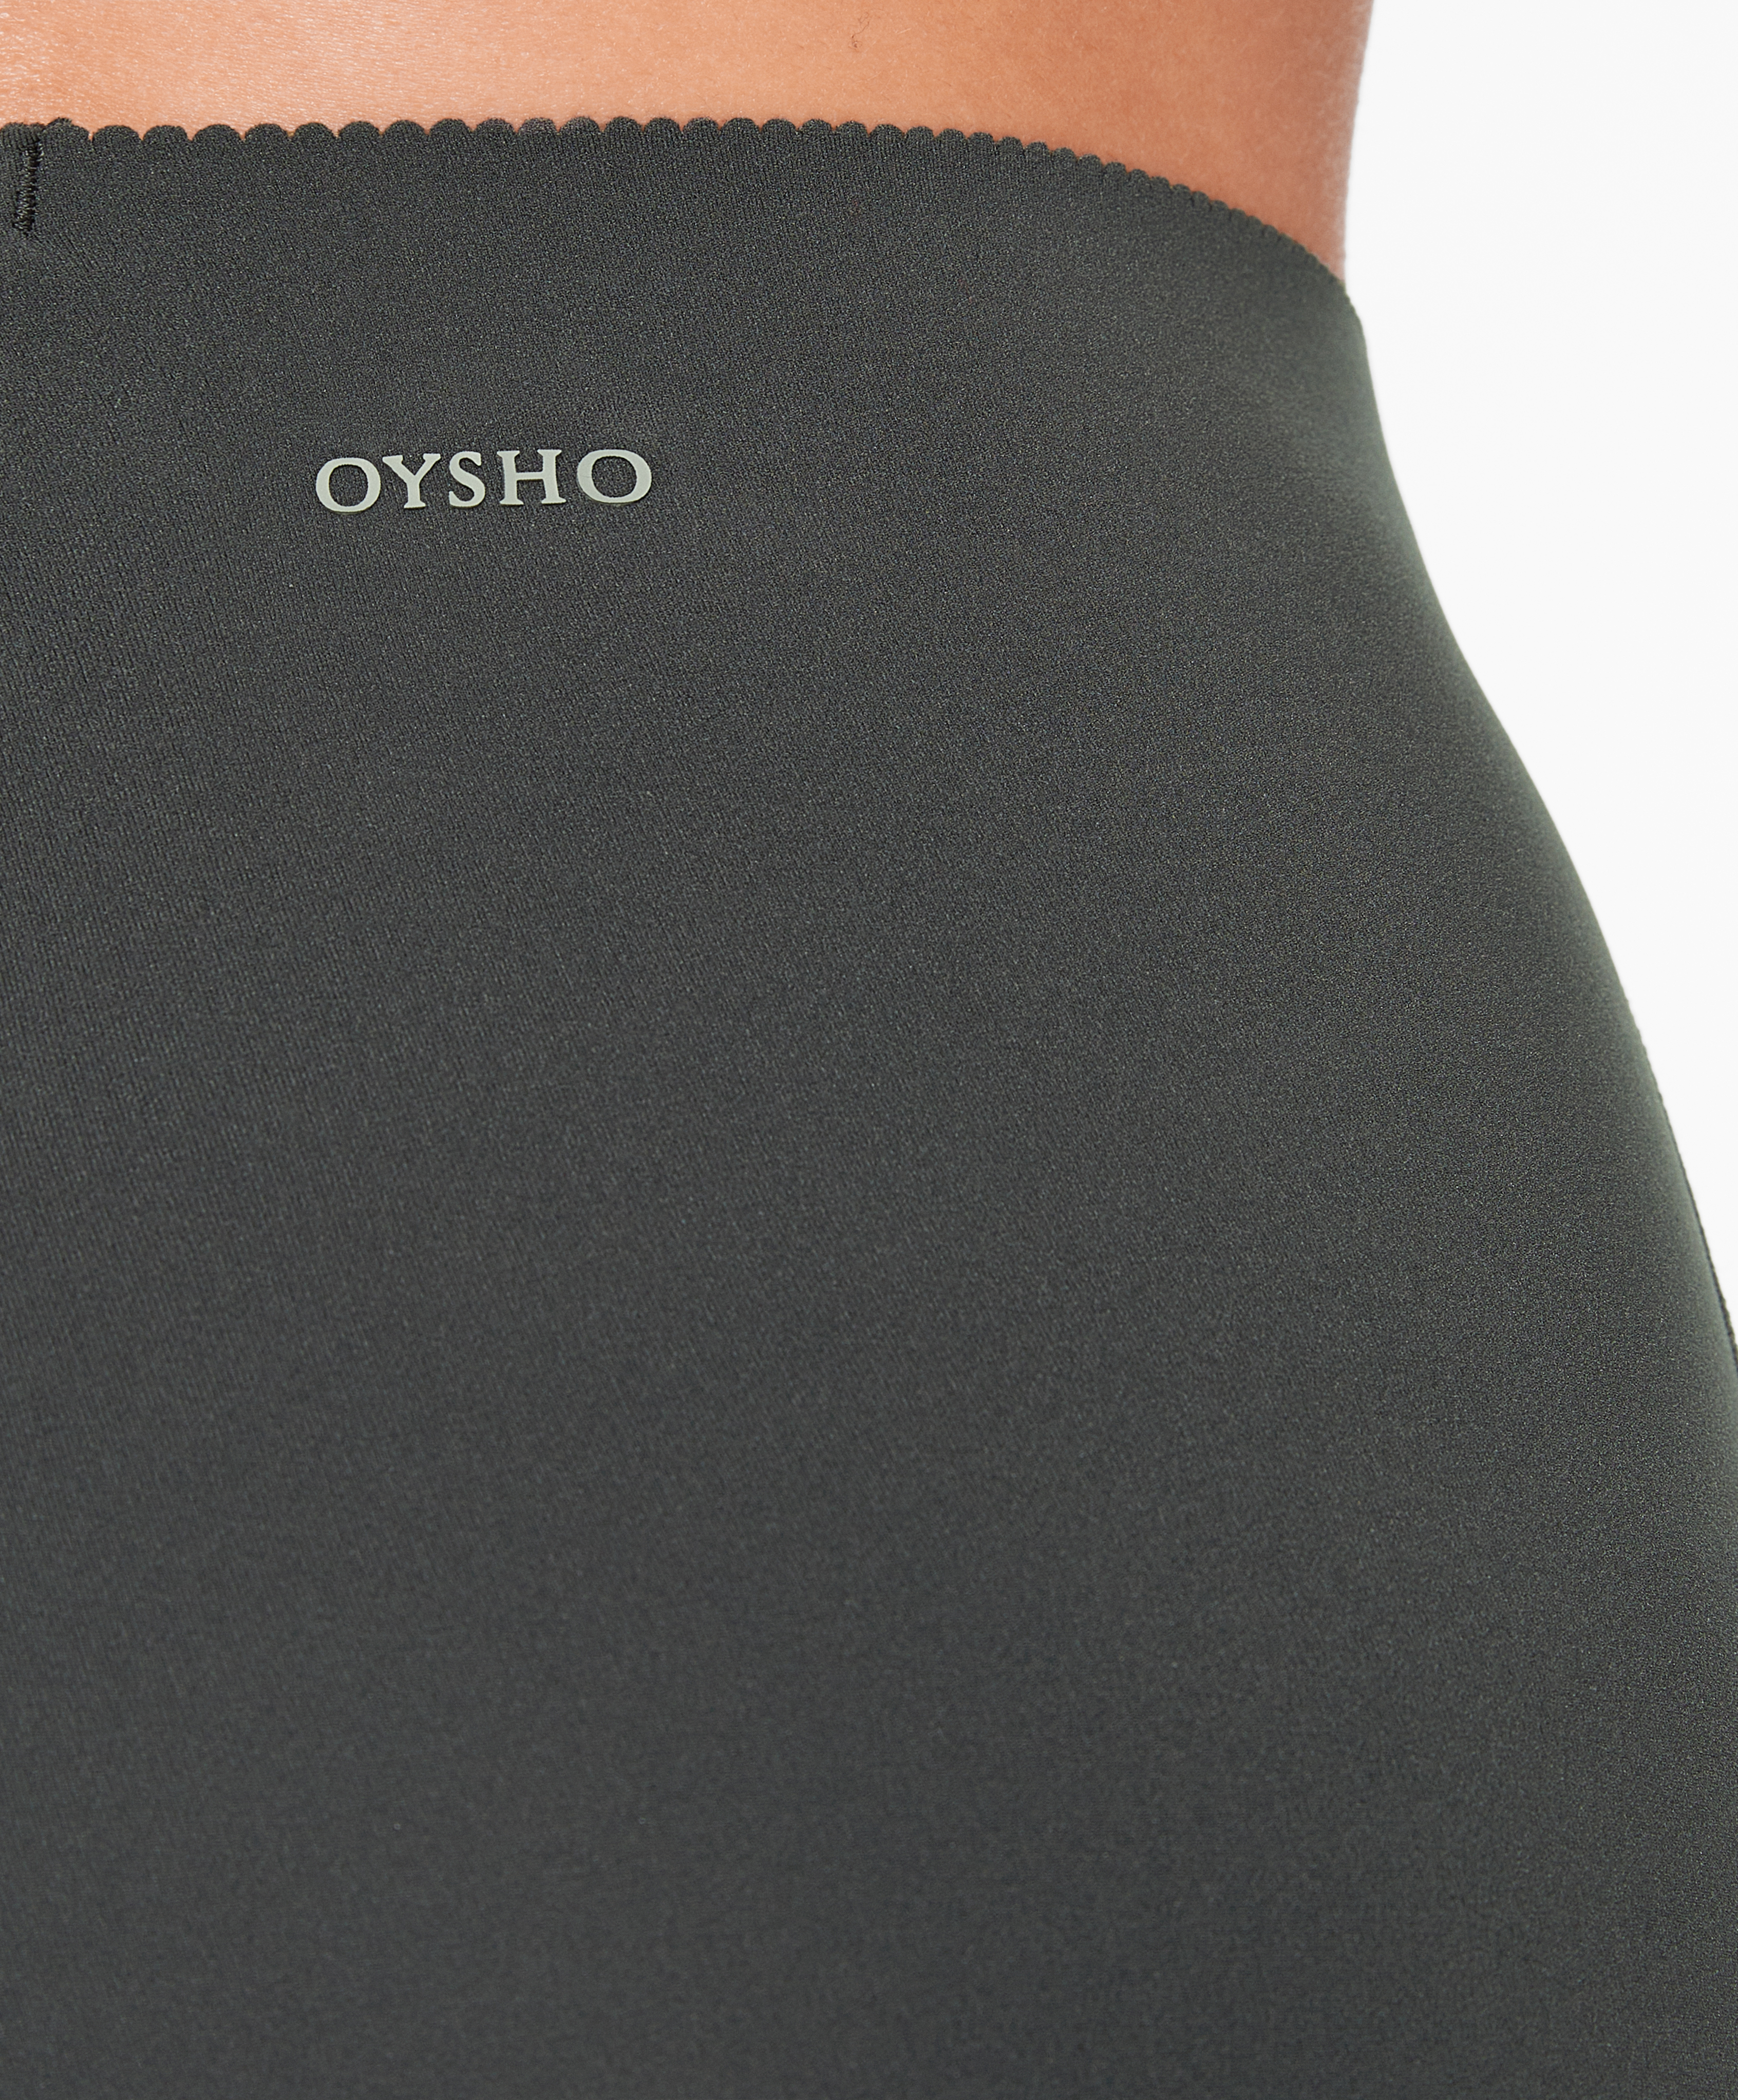 Buy Oysho Womens Leggings Online - Black Basic Compressive Ankle-length